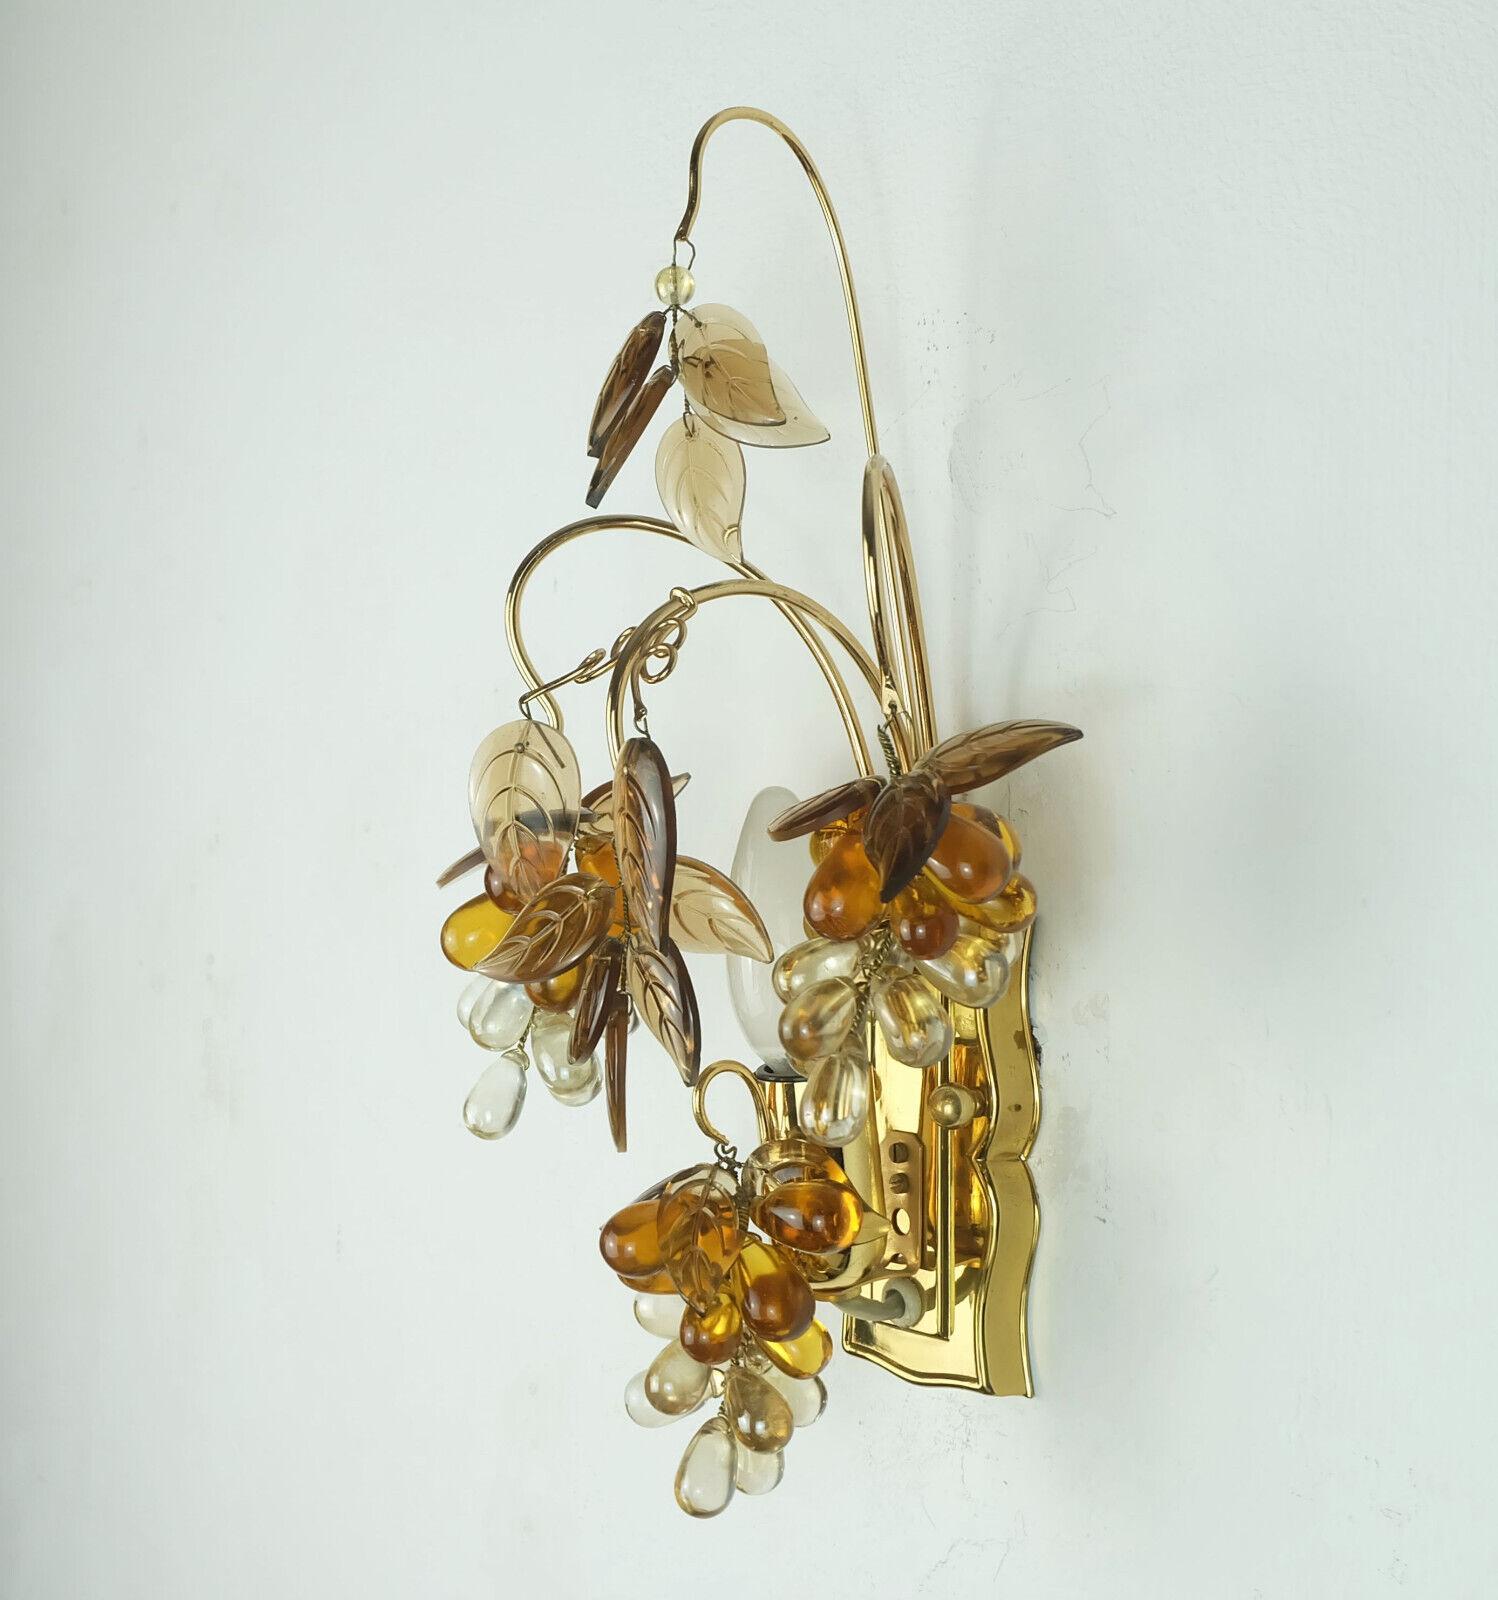 Sehr schöner Wandleuchter aus der Mitte des Jahrhunderts, hergestellt von Palwa (Palme & Walter) in den 1970er Jahren. Hergestellt aus Kristallglas in Form von Trauben und Blättern, Rahmen aus vergoldetem Messing. Hält 1 E14-Glühbirne. 

Abmessungen